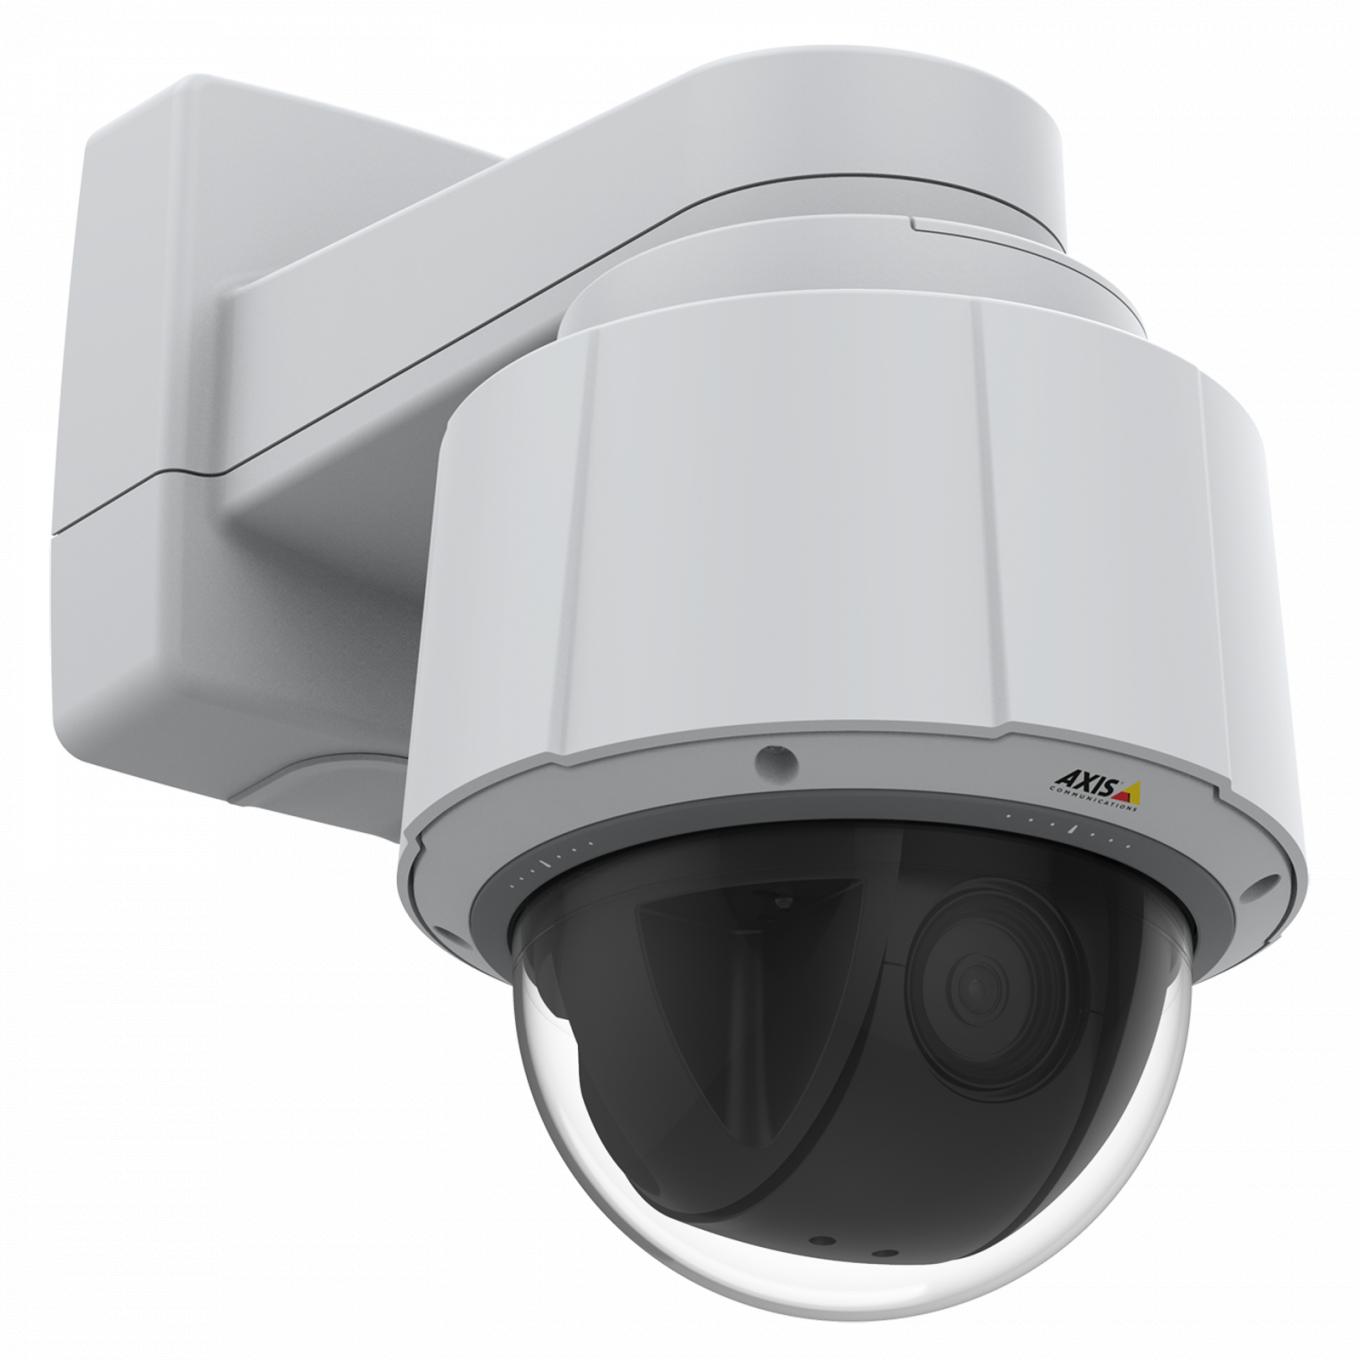 Axis IP Camera Q6075 tiene PTZ para interiores con HDTV 720p y zoom óptico de 30x